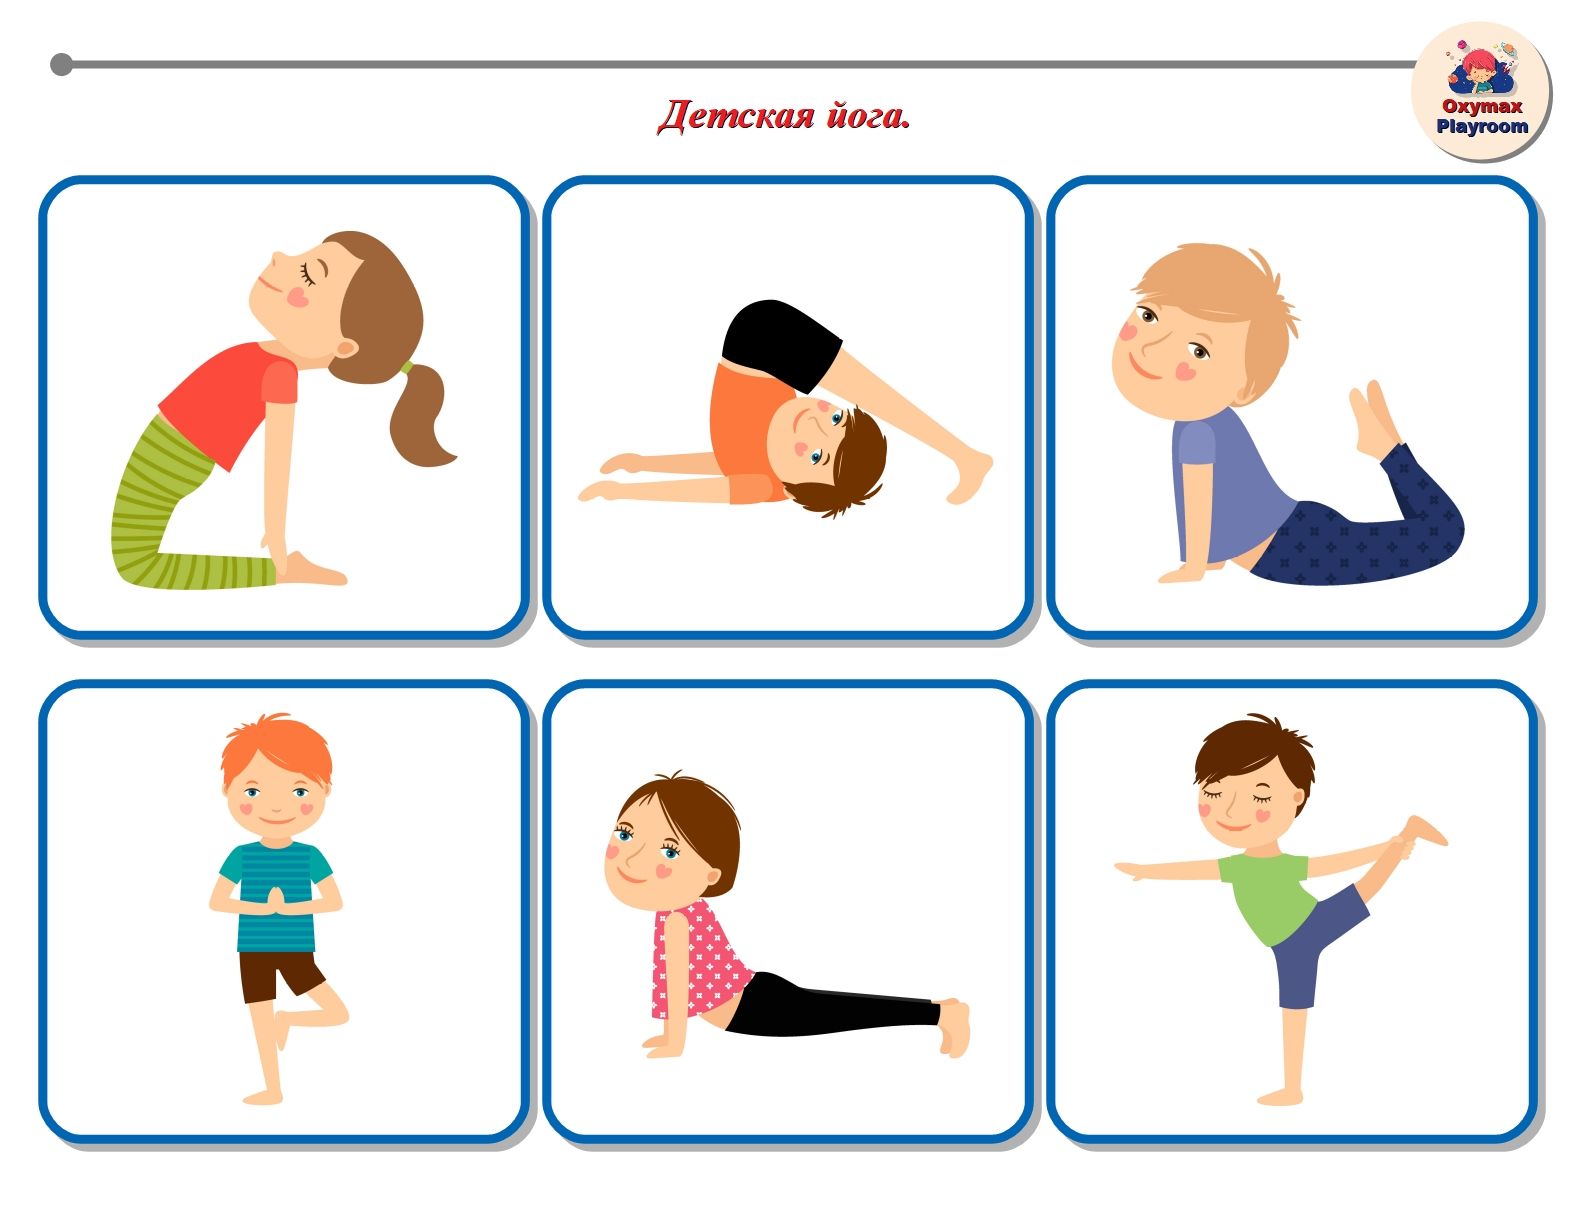 Картинки с упражнениями для детей. Карточки йоги для детей. Карточки йога для детей. Карточки для детской йоги. Йога для дошкольников.